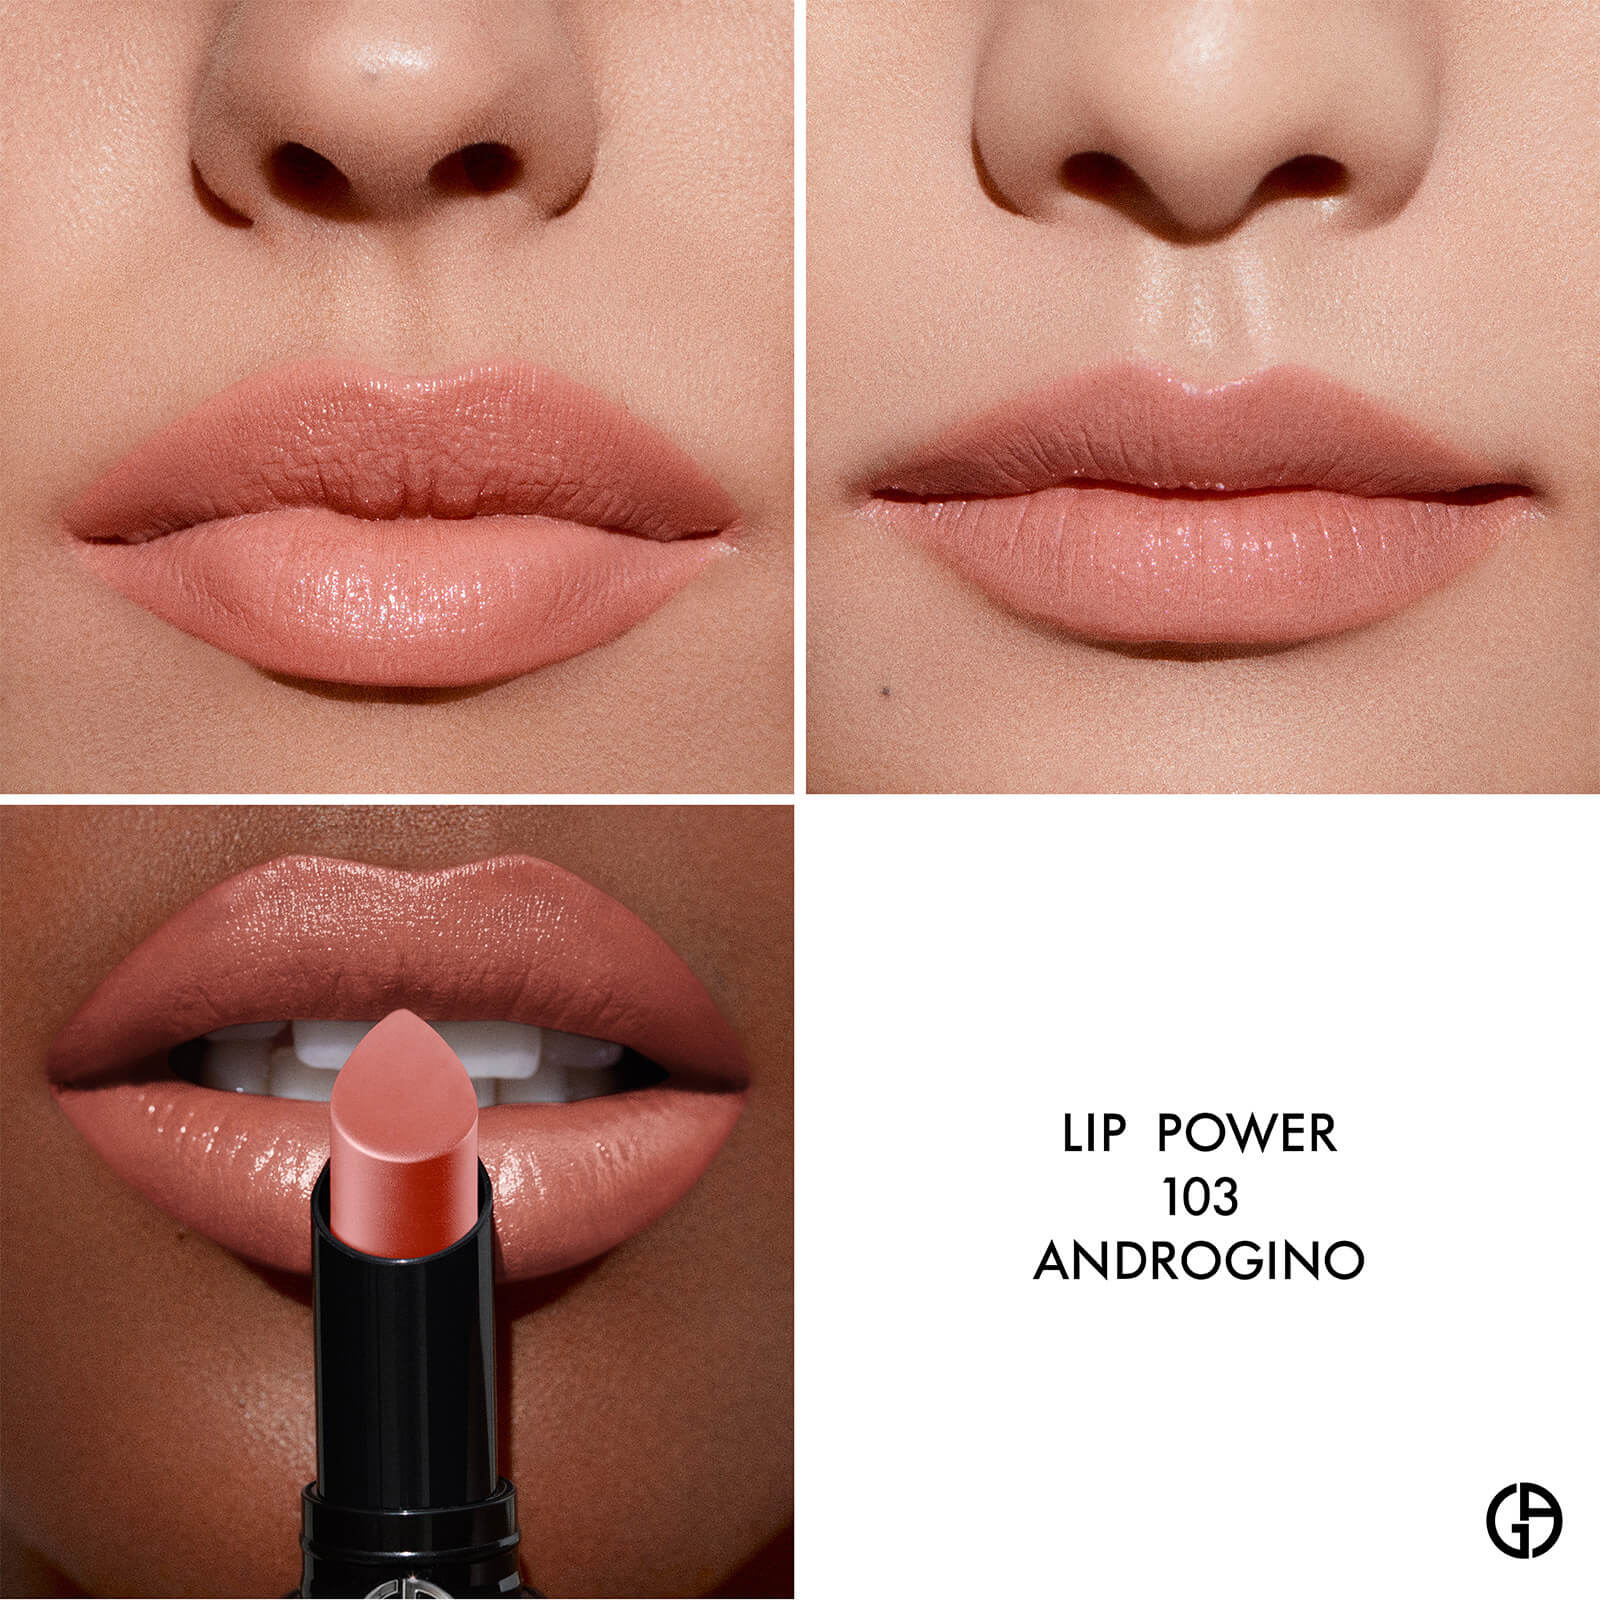 Lip Powder shades